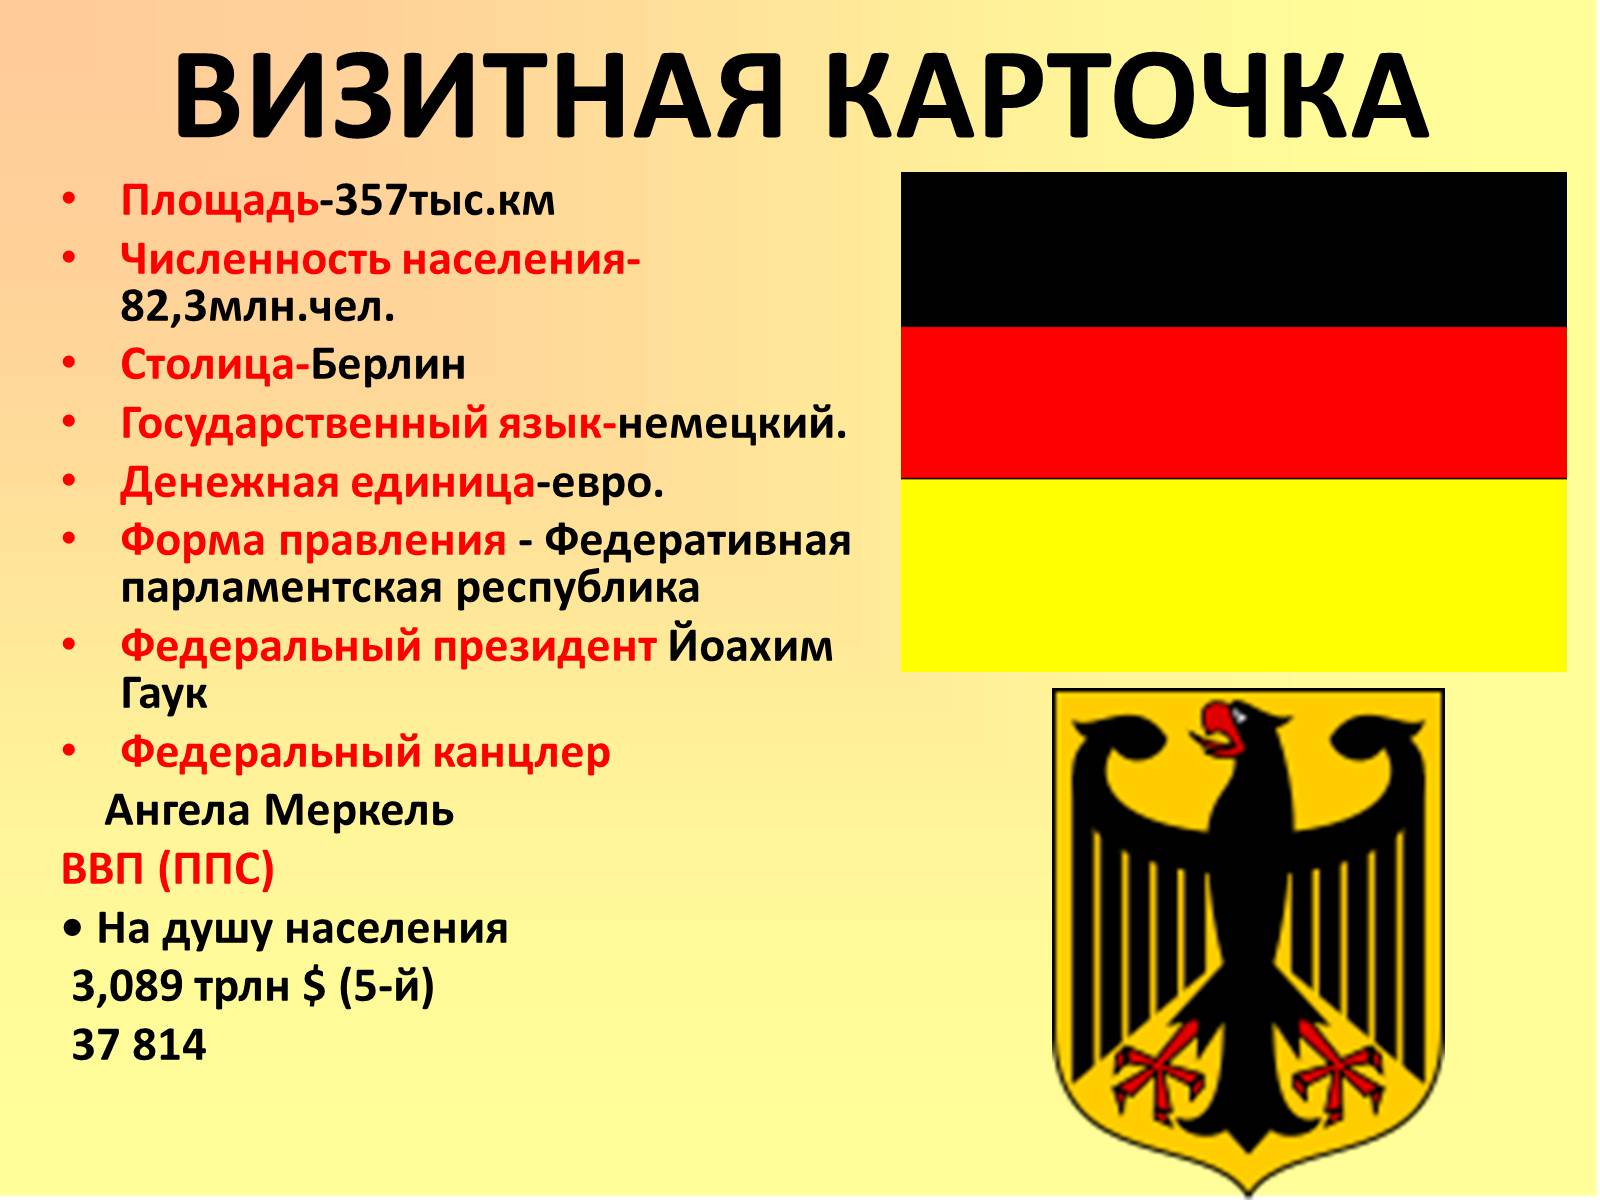 Визитка страны. Столица Федеративной Республики Германия. Визитная карточка Германии. Германия столица форма правления. Германия визитная карточка страны.